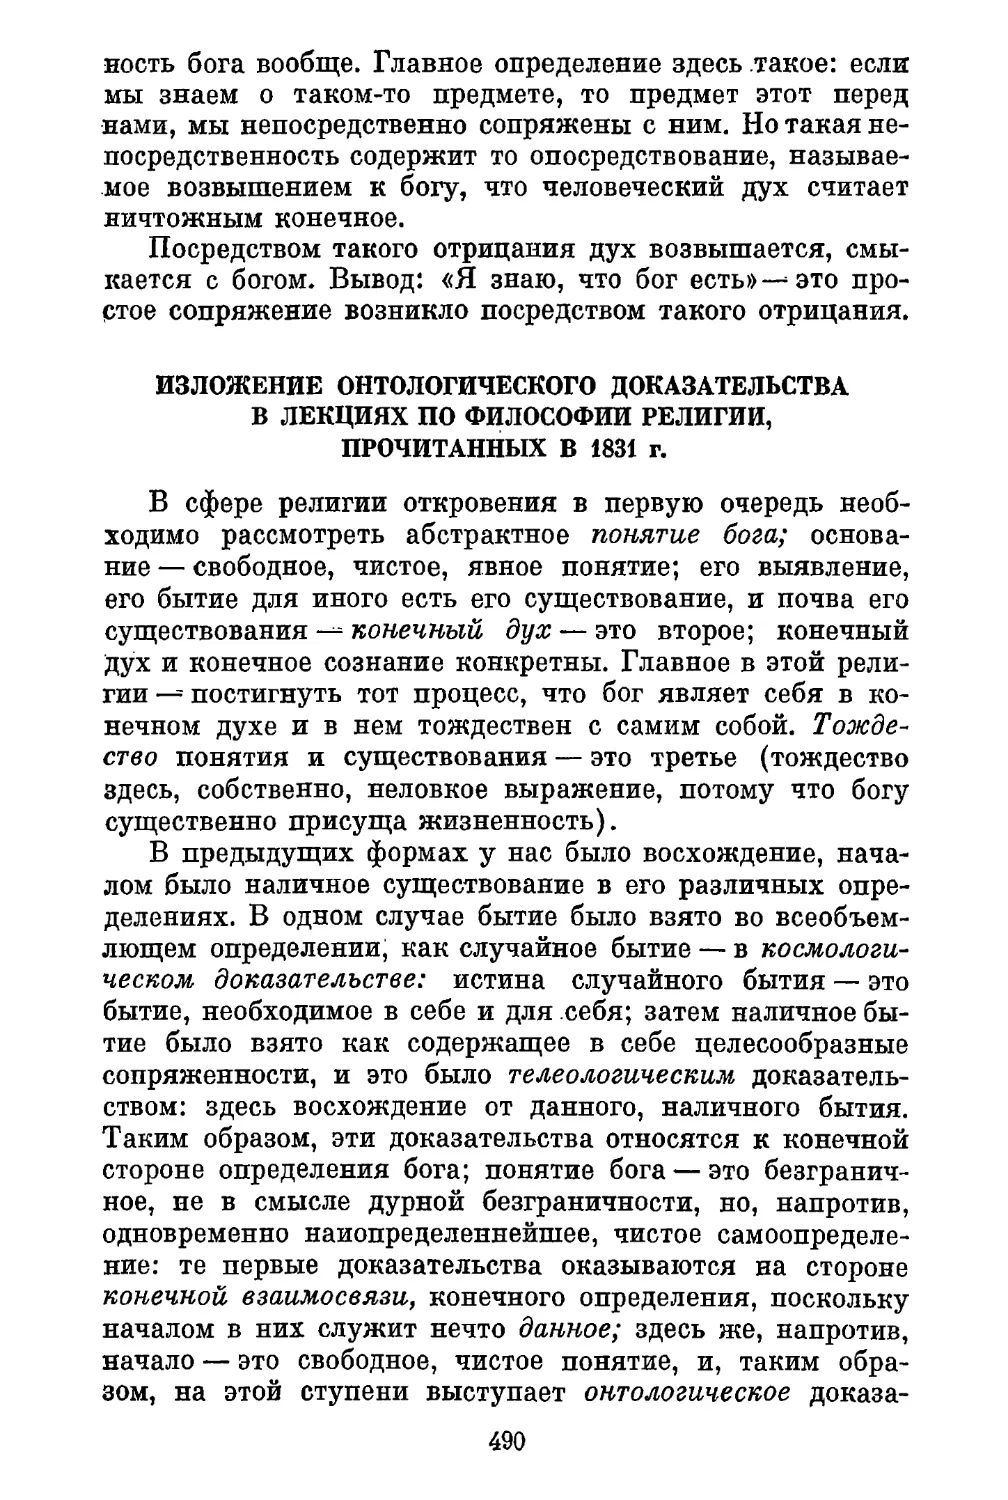 Изложение онтологического доказательства в лекциях по философии религии, прочитанных в 1831 г.